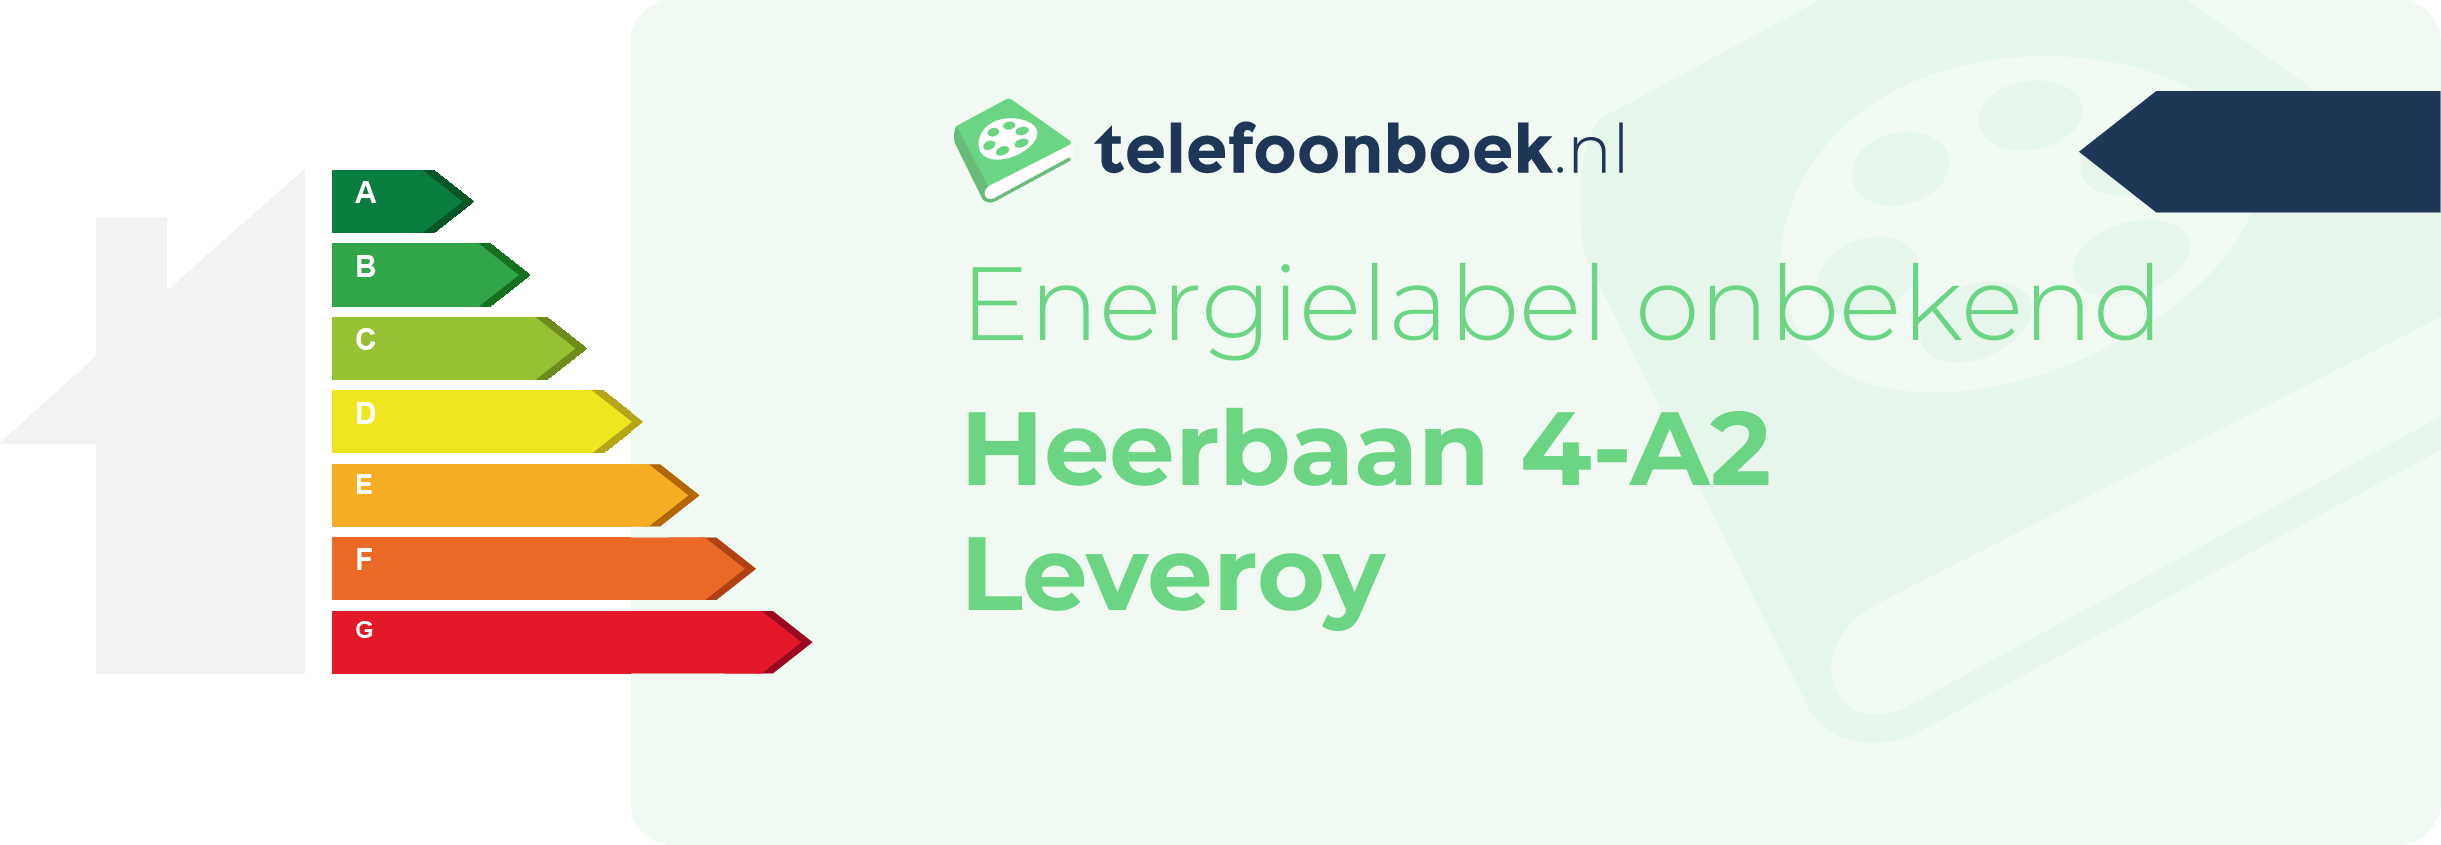 Energielabel Heerbaan 4-A2 Leveroy